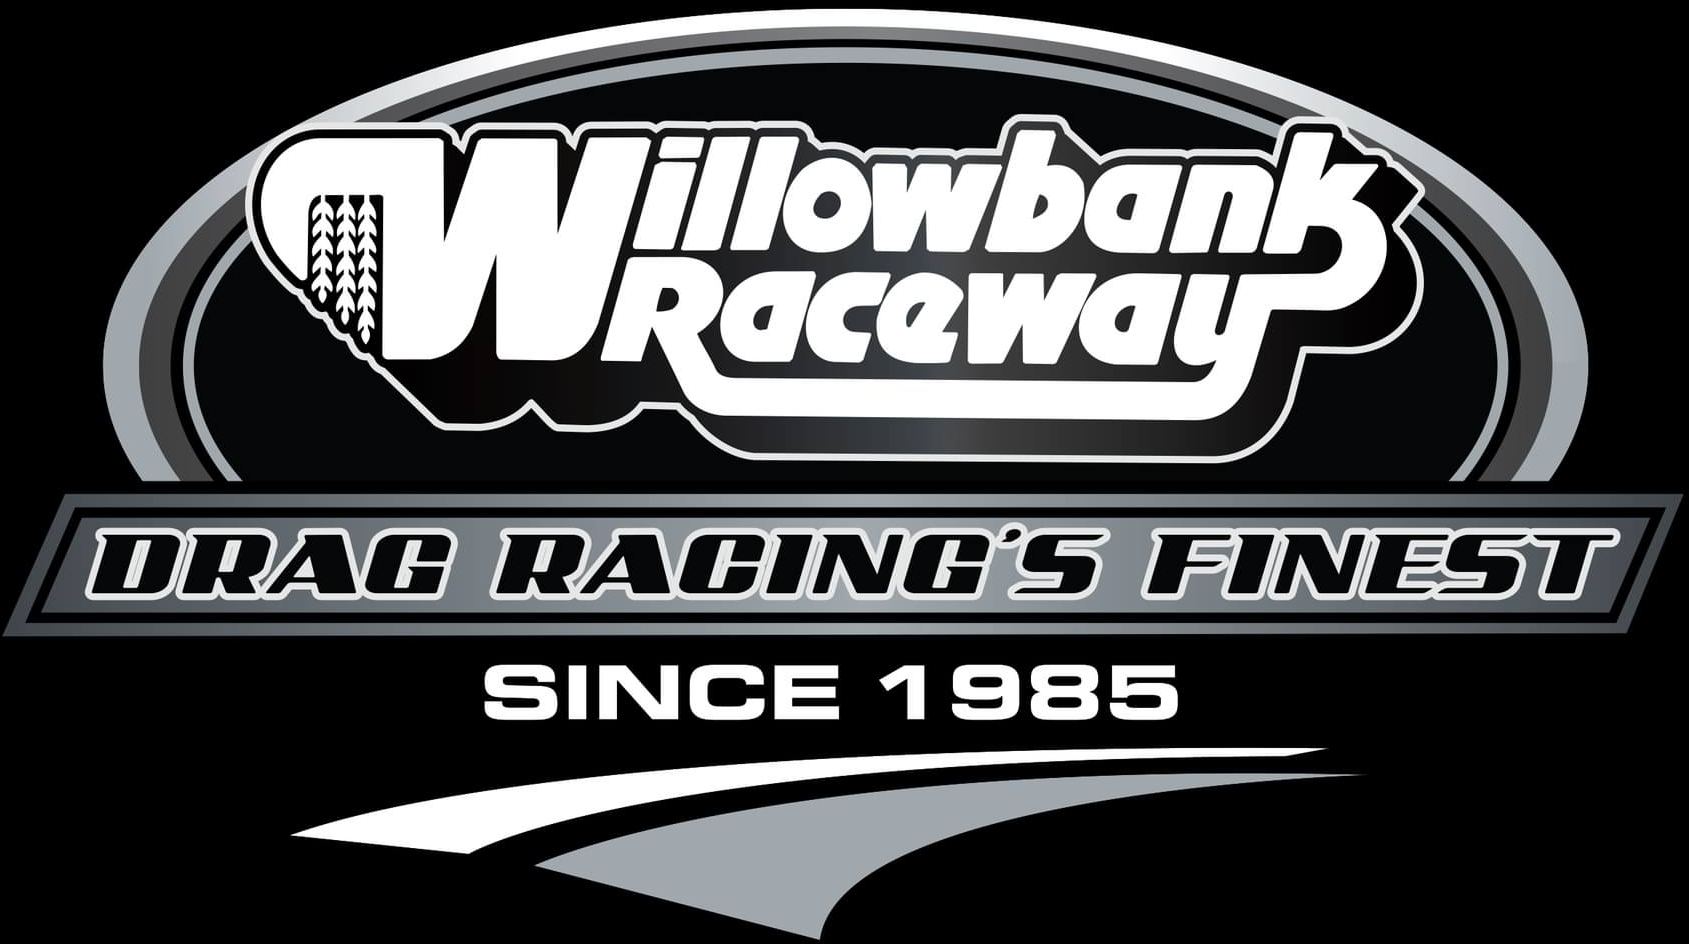 Willowbank Raceway's logo